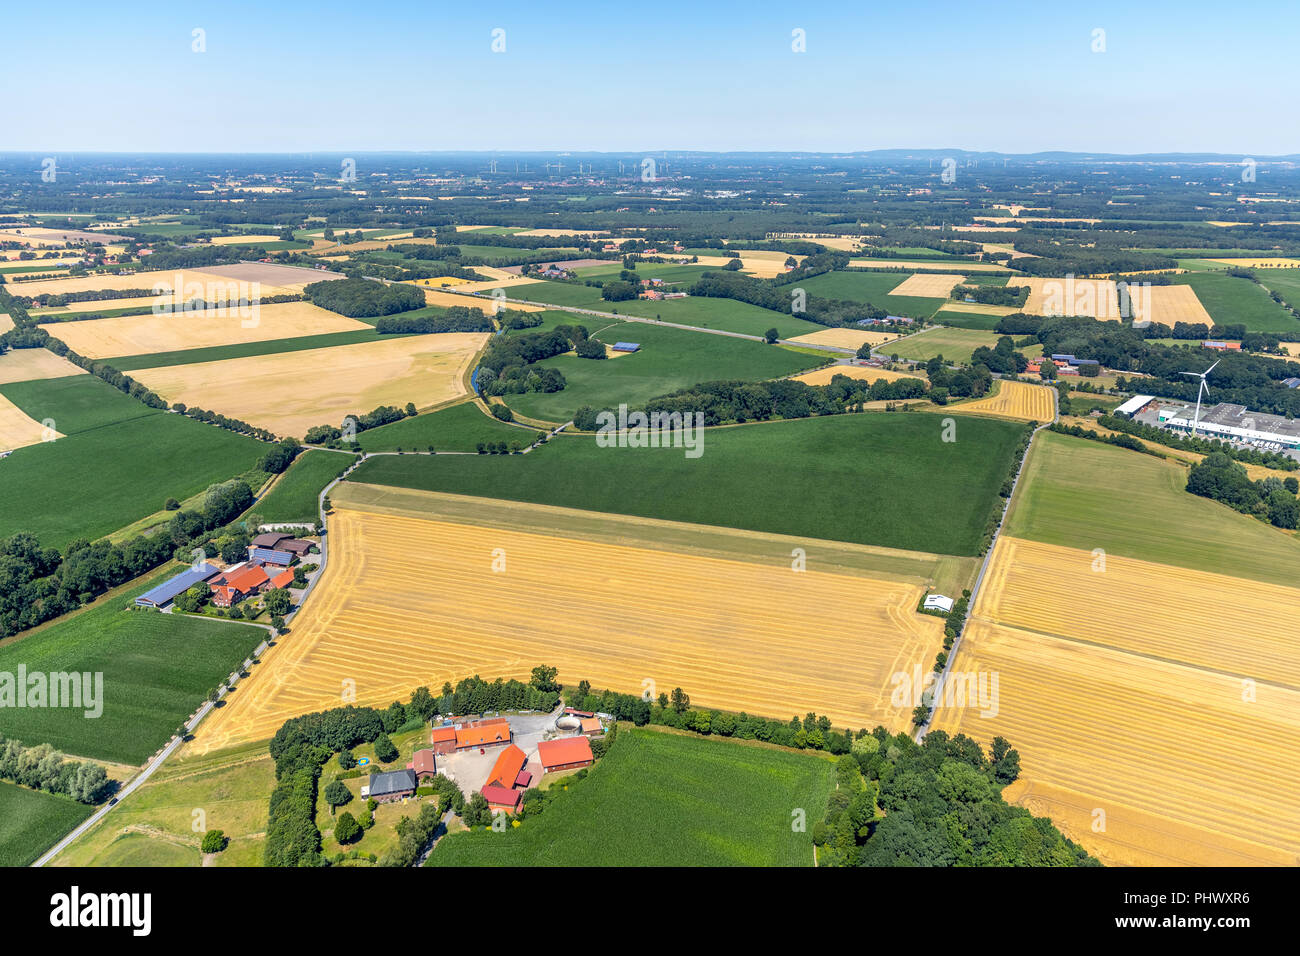 , École de vol zone active dans Gleitschimflugschule - Münsterland, aérodrome privé Beelen, de l'agriculture, de champs, de prairies, de forêts à l'ouest de Beelen, Beel Banque D'Images